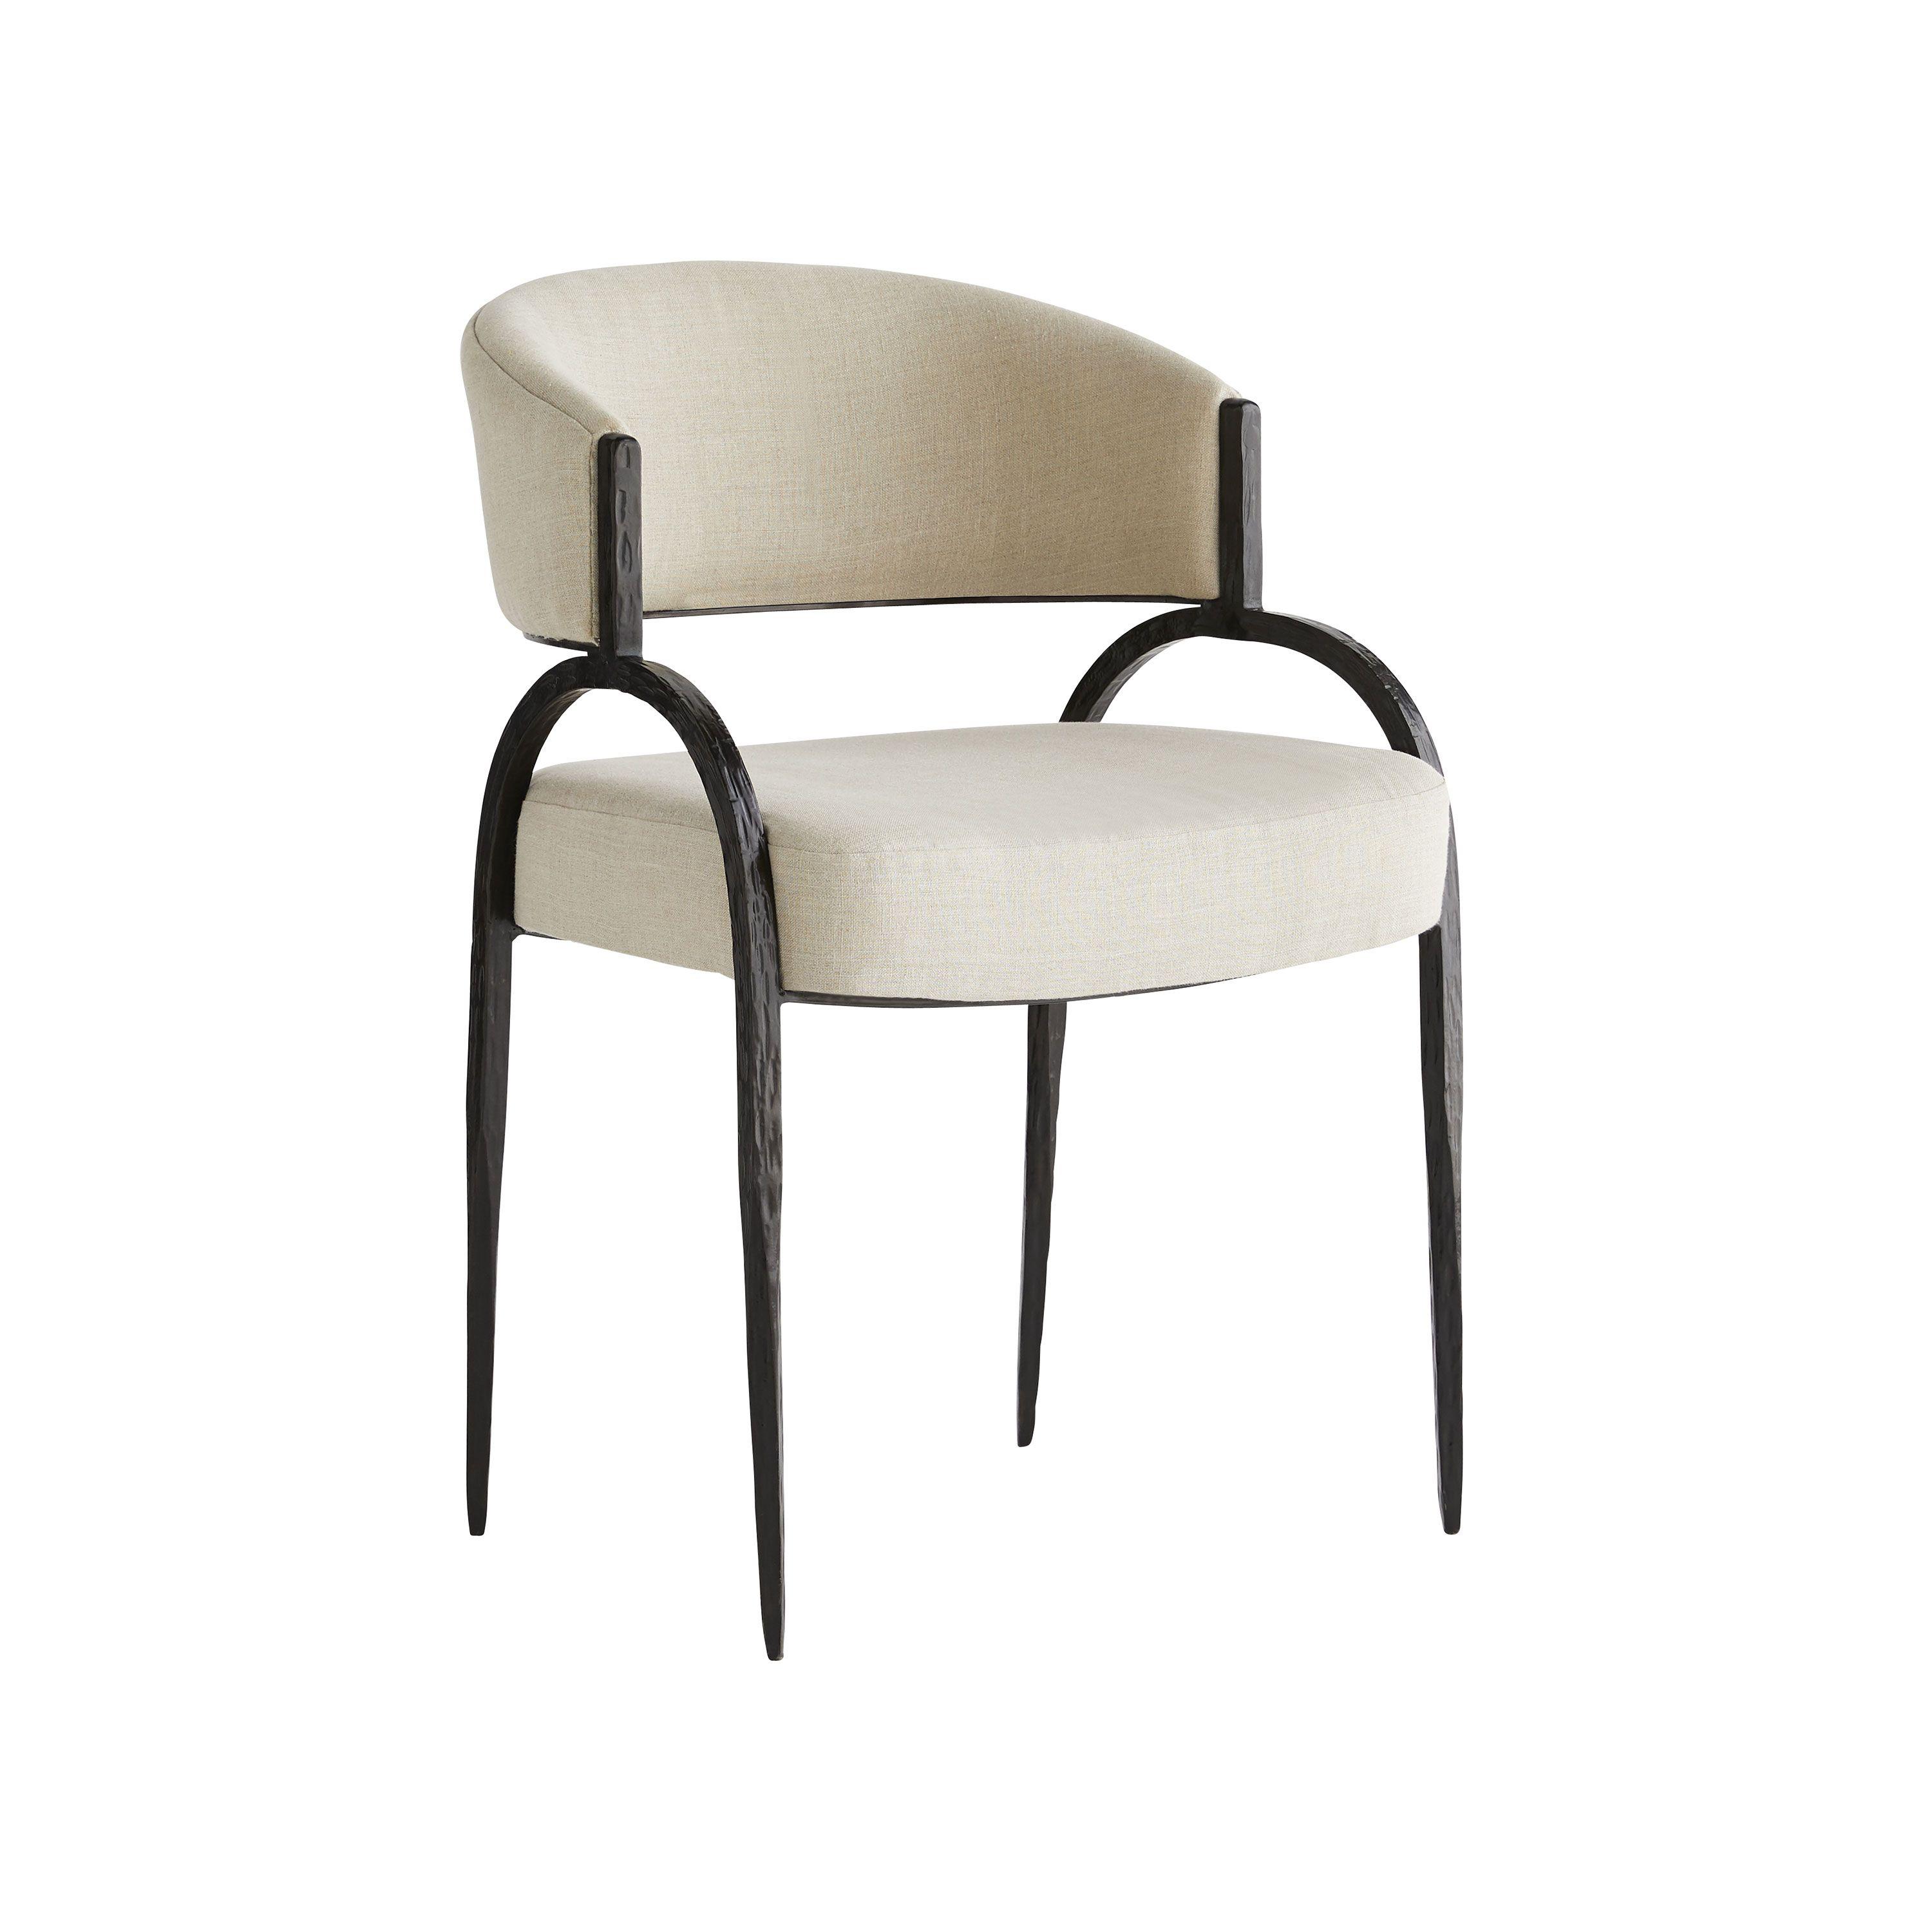 Купить Стул с подлокотником Bahati Chair в интернет-магазине roooms.ru